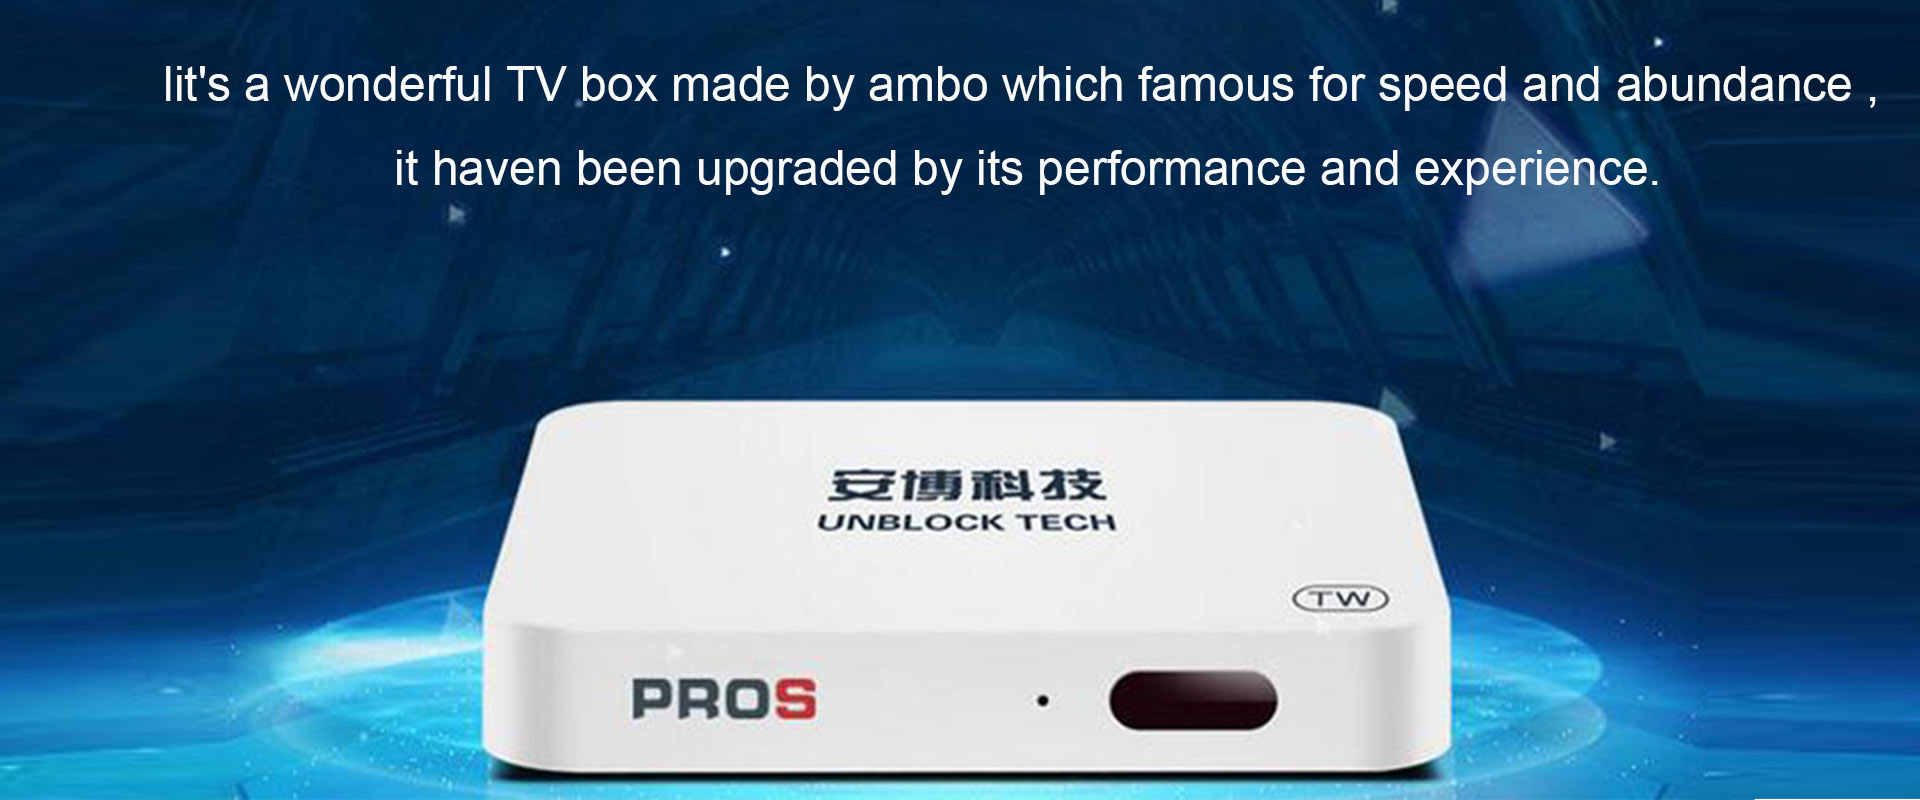 UBOX 7 TV Box - Deblokkeer UPROS UBOX Gen 7 Android TV Box 4K